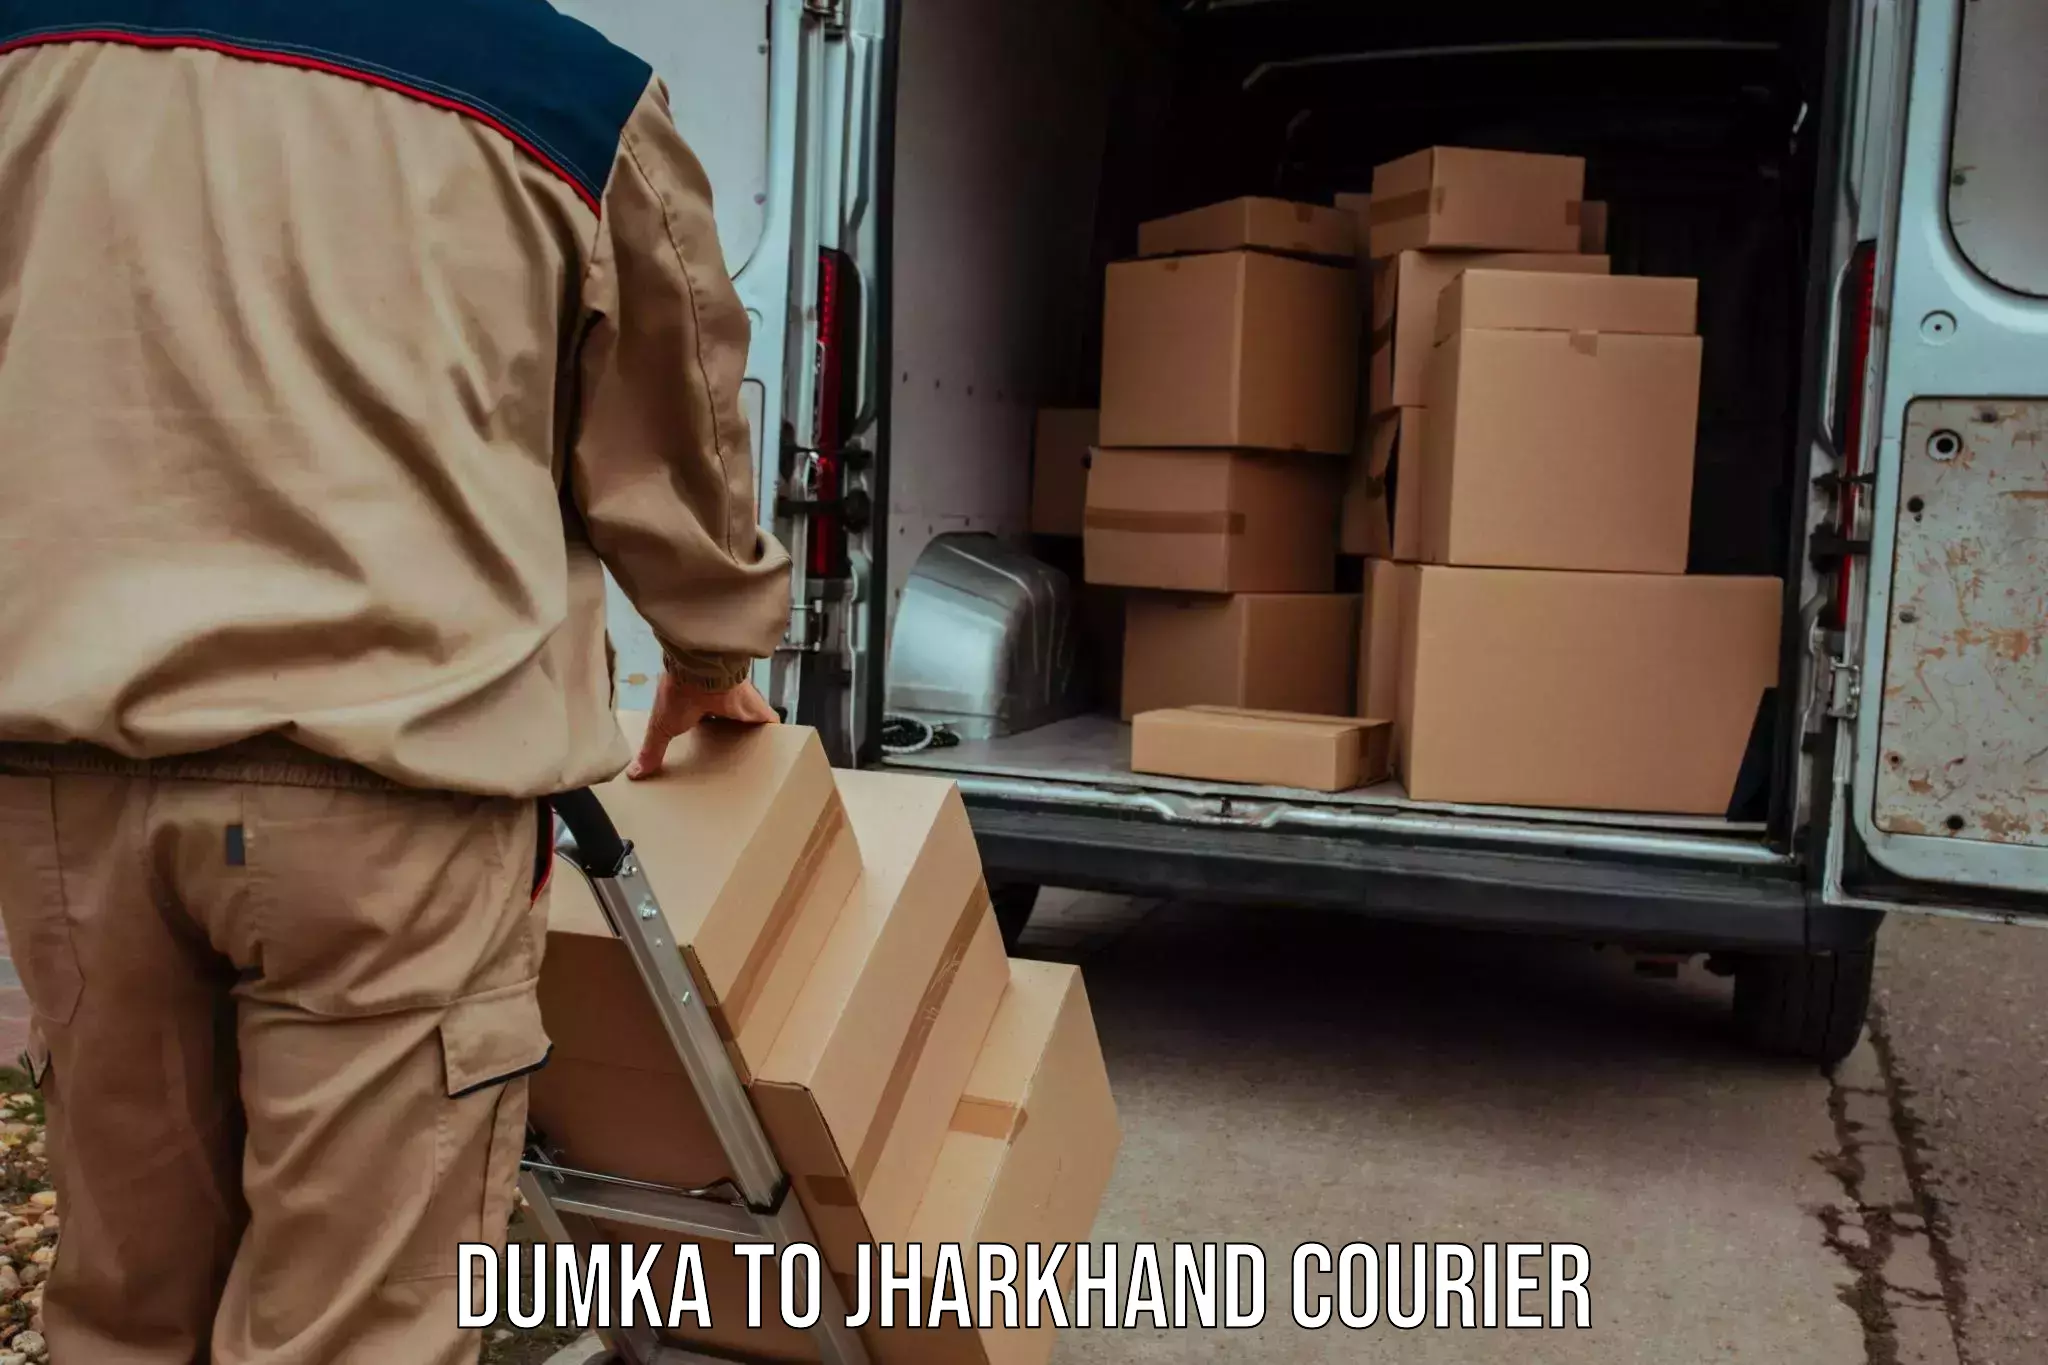 Courier service comparison Dumka to Ormanjhi